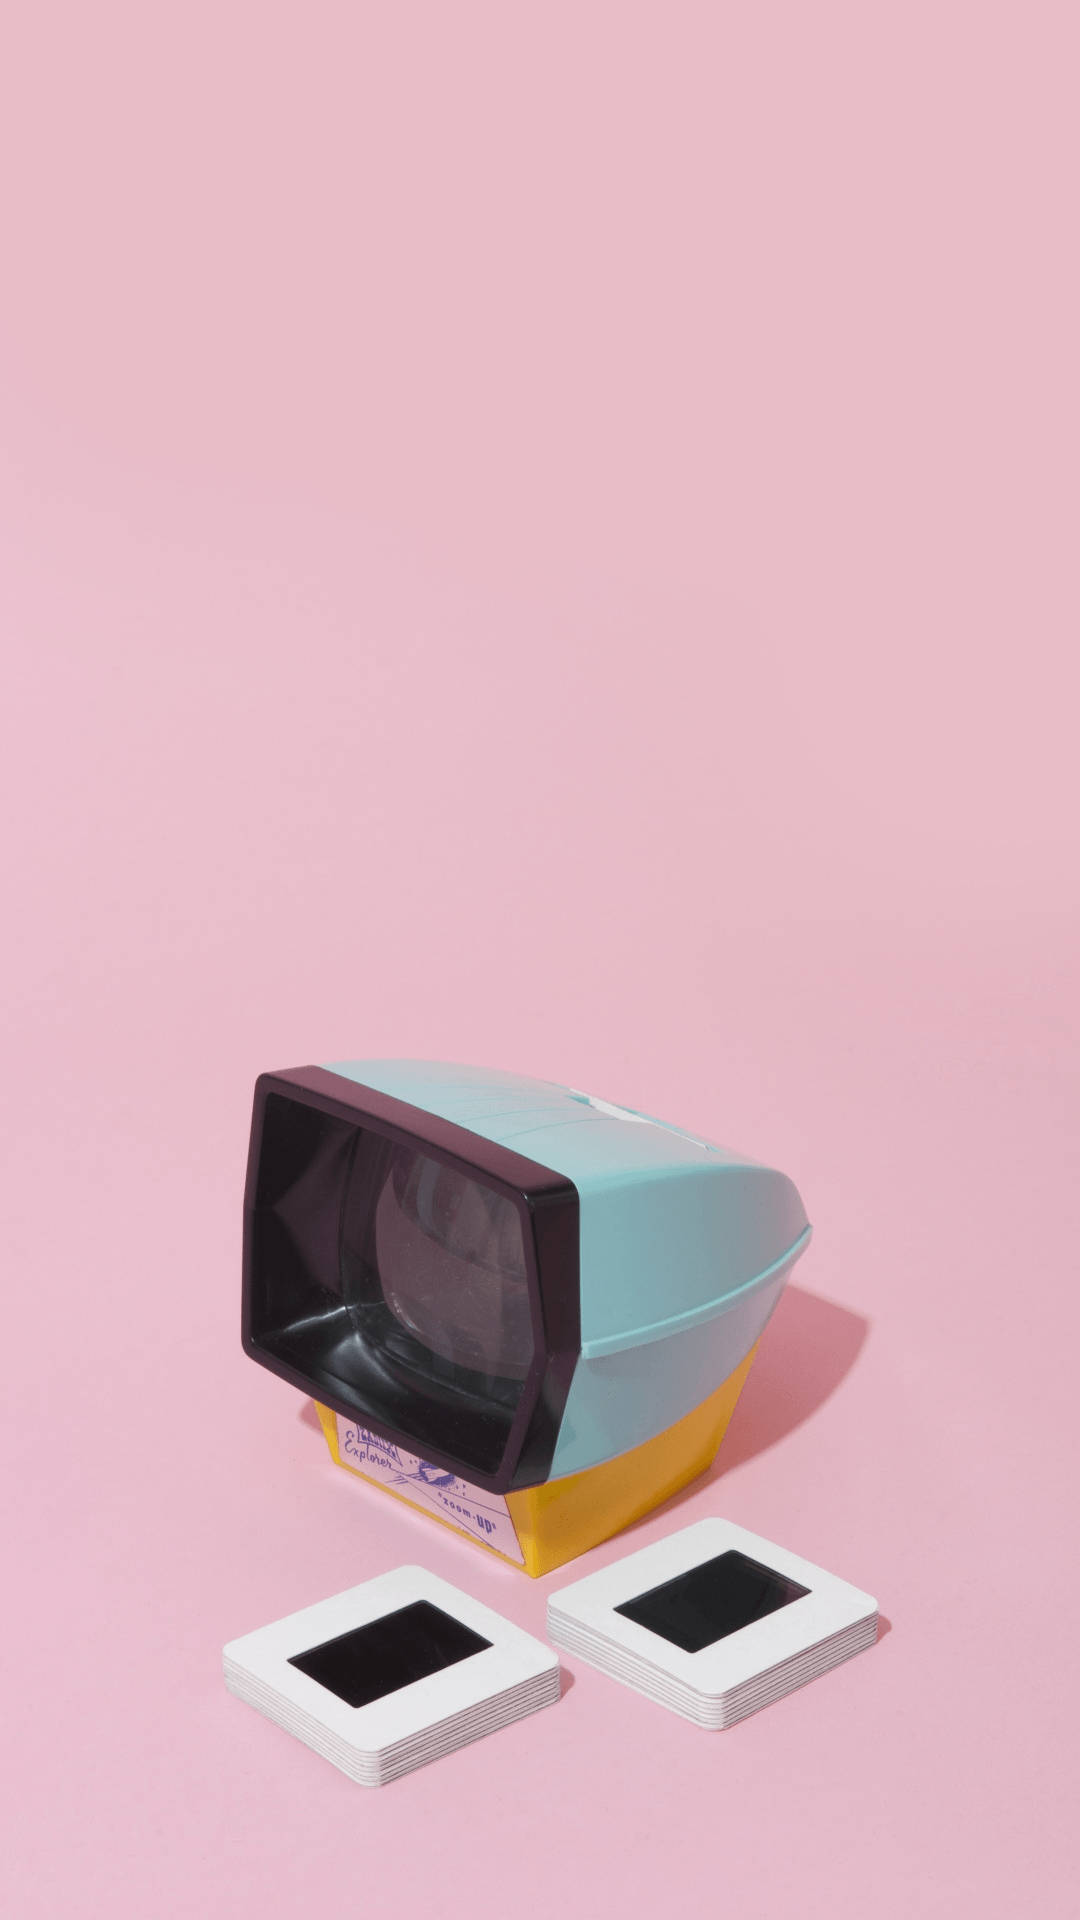 Aesthetic Retro Pastel Television